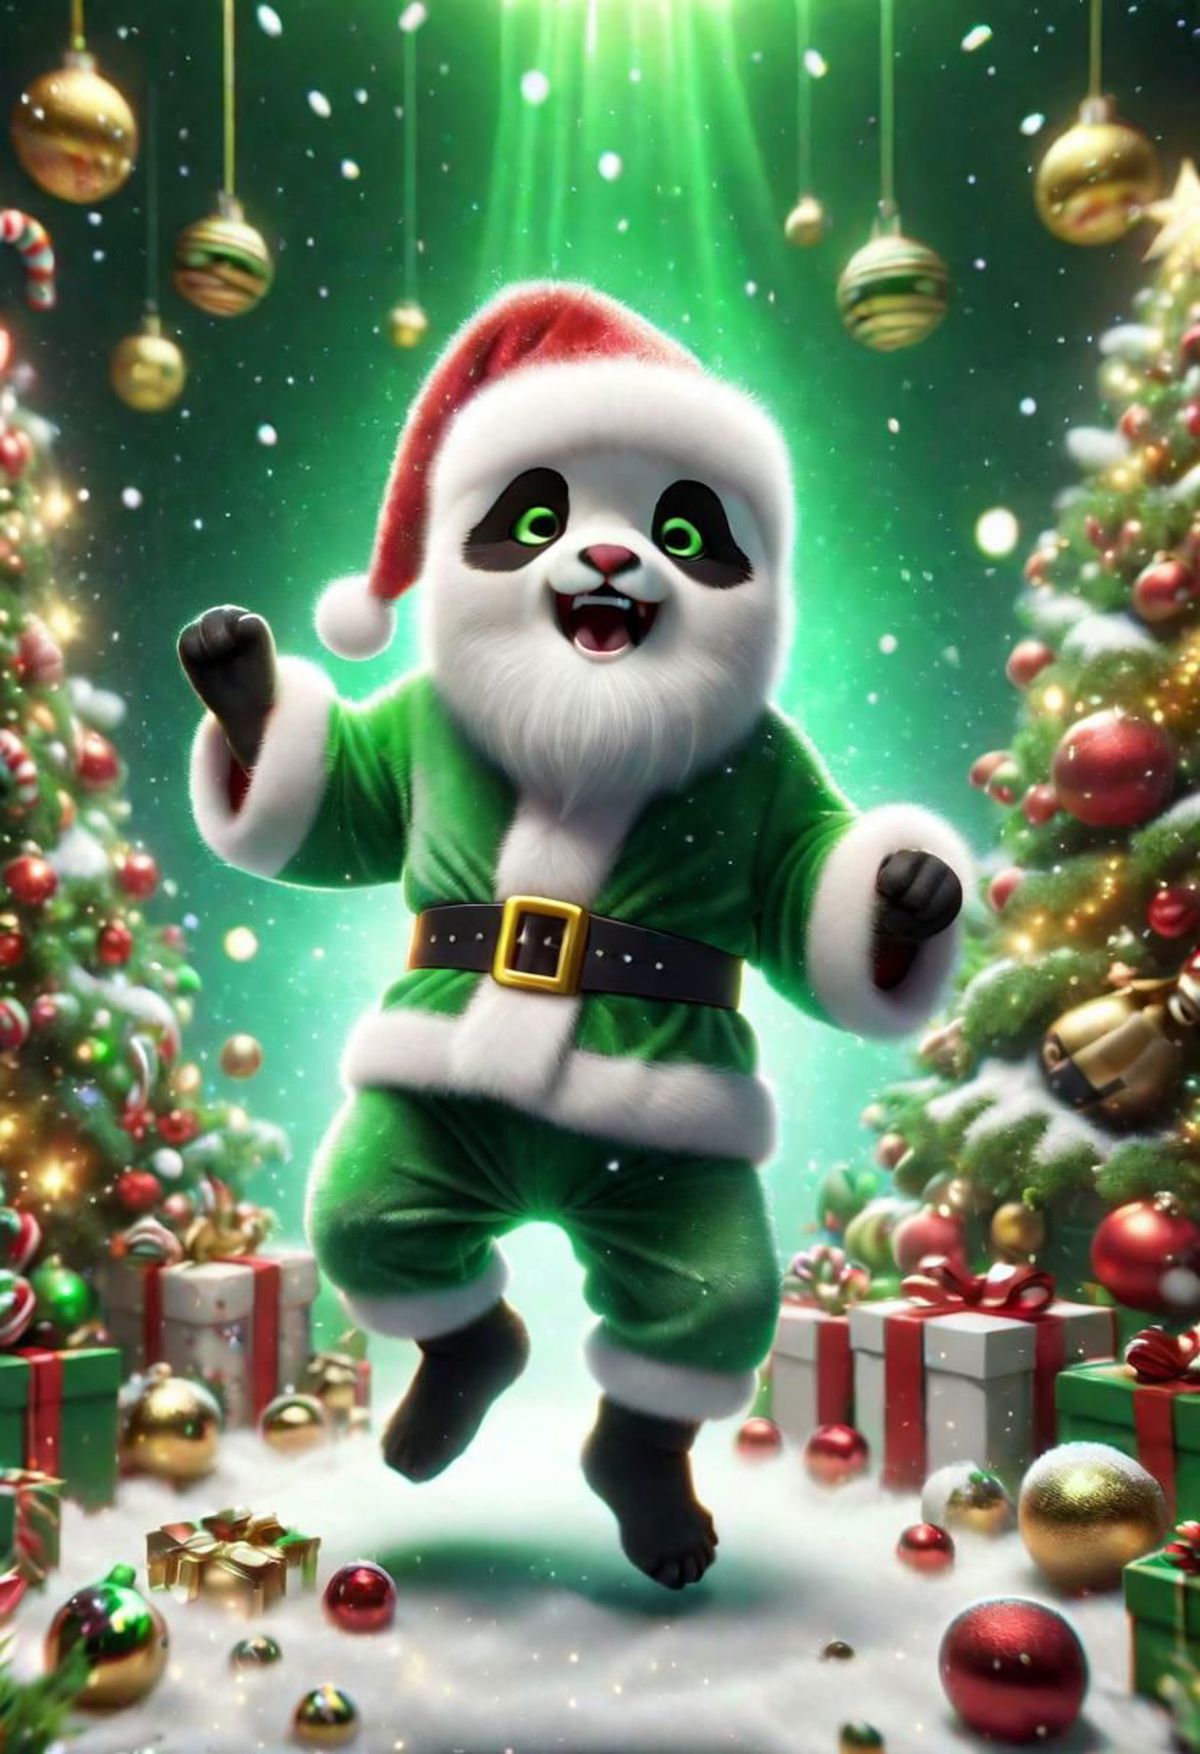 A cartoon panda bear wearing a Santa Claus costume.